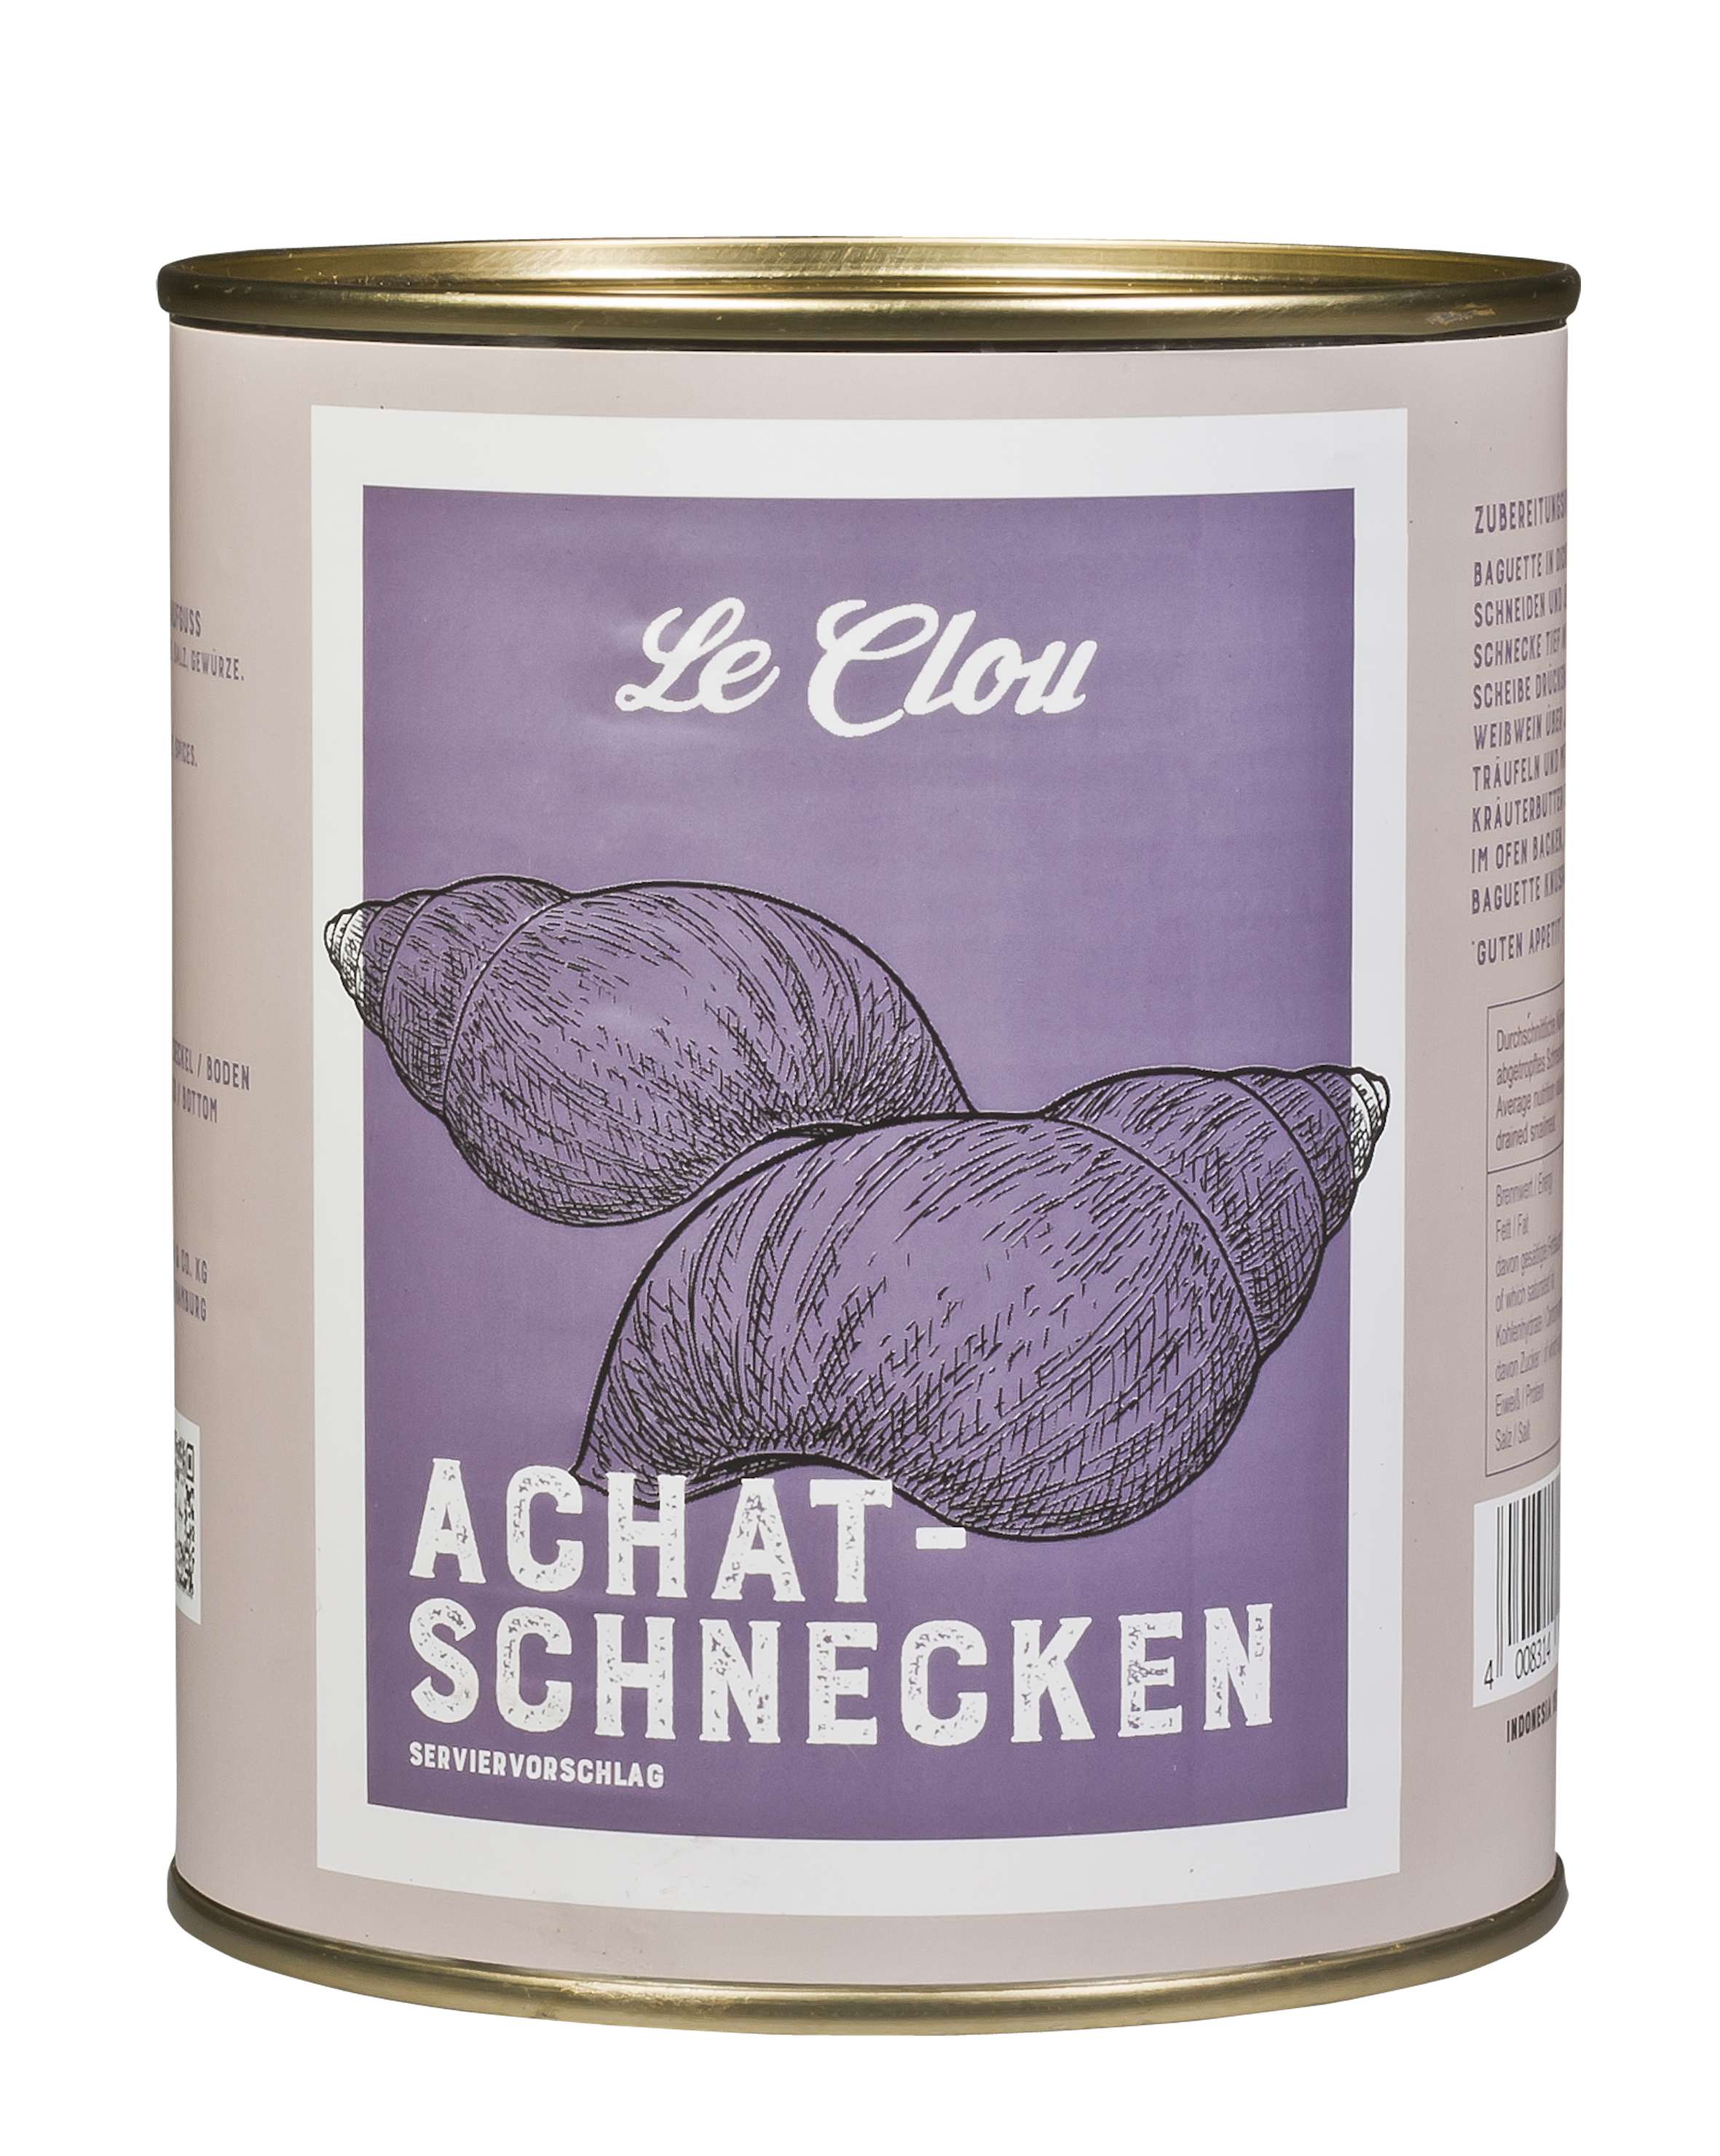 Achat-Schnecken, ca. 10-12 Dtzd. Stück, 800 g